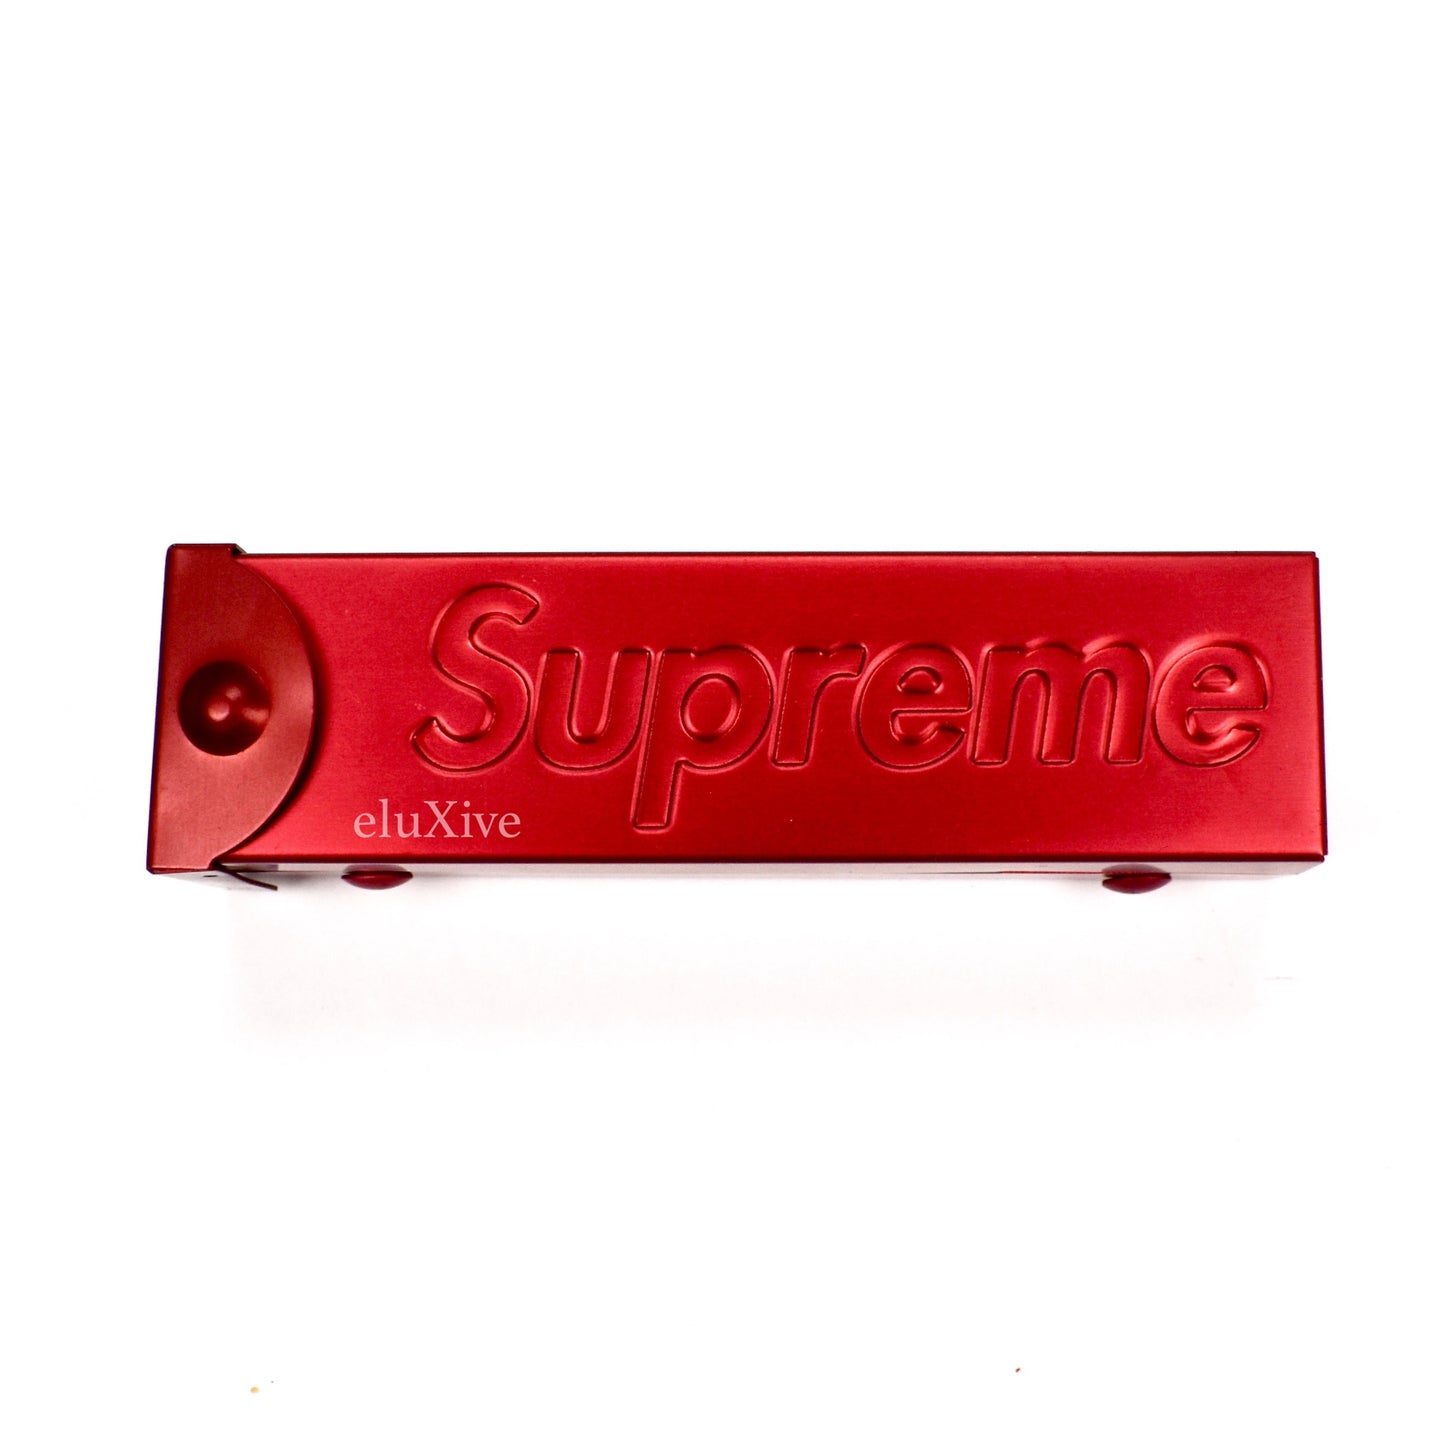 Supreme - Red Box Logo Aluminum Dice